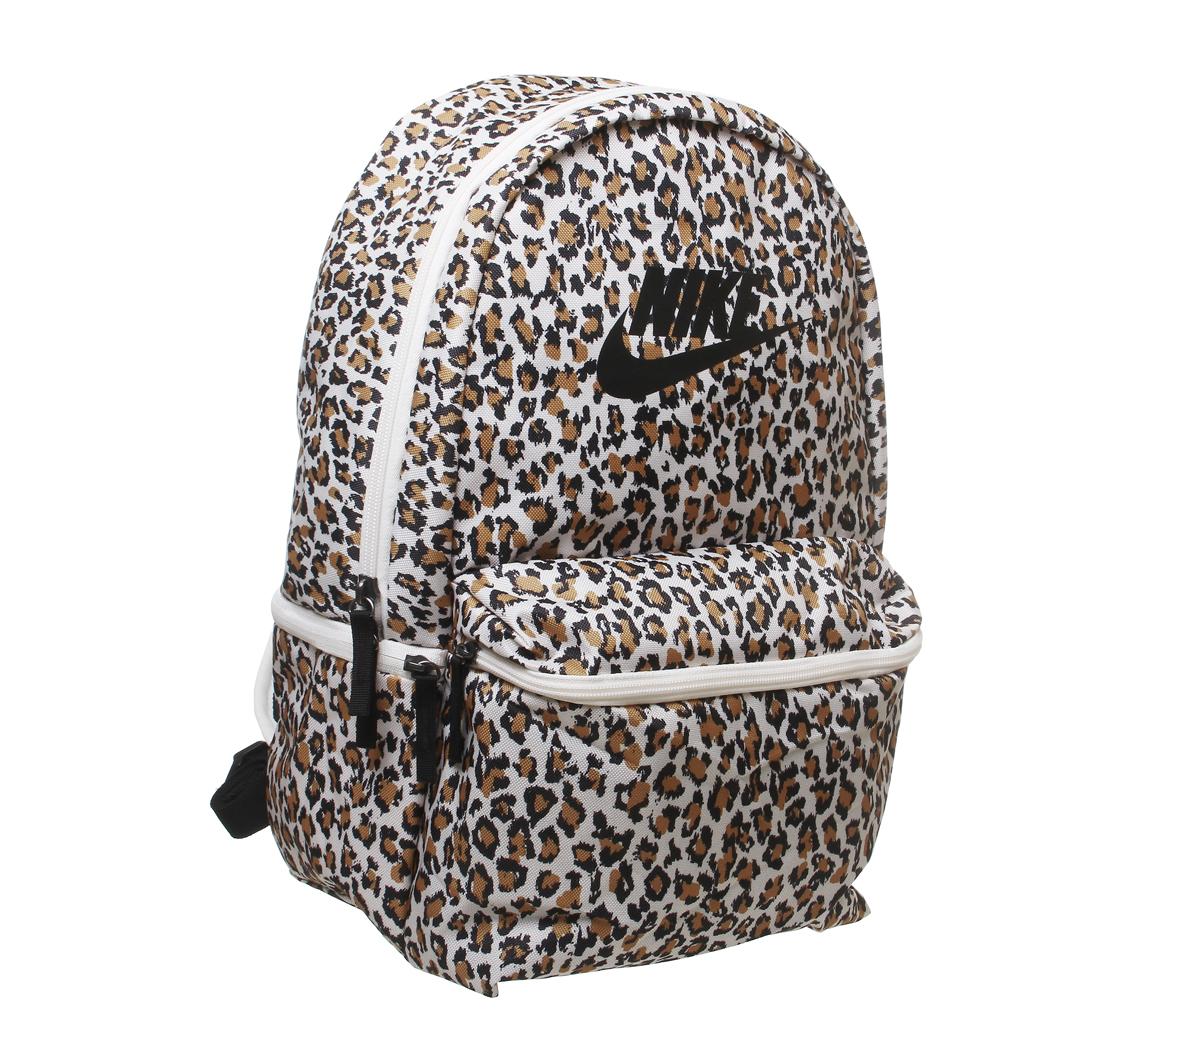 nike leopard print backpack